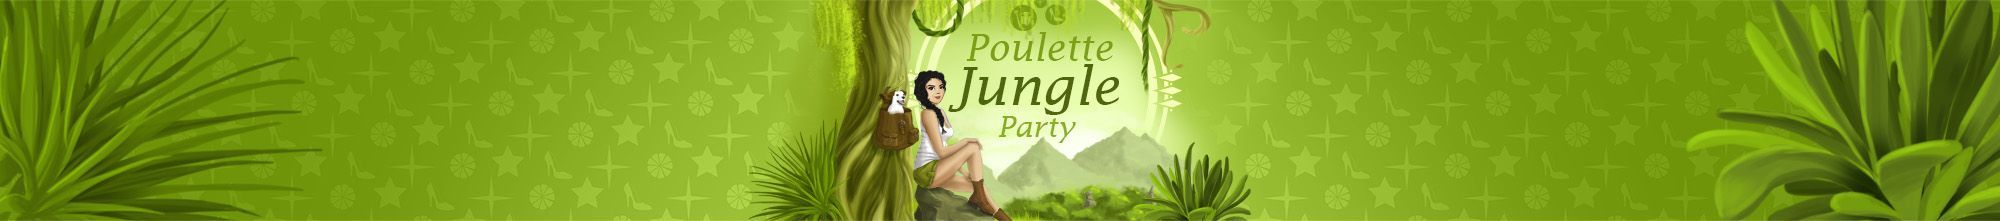 Poulette Jungle Party